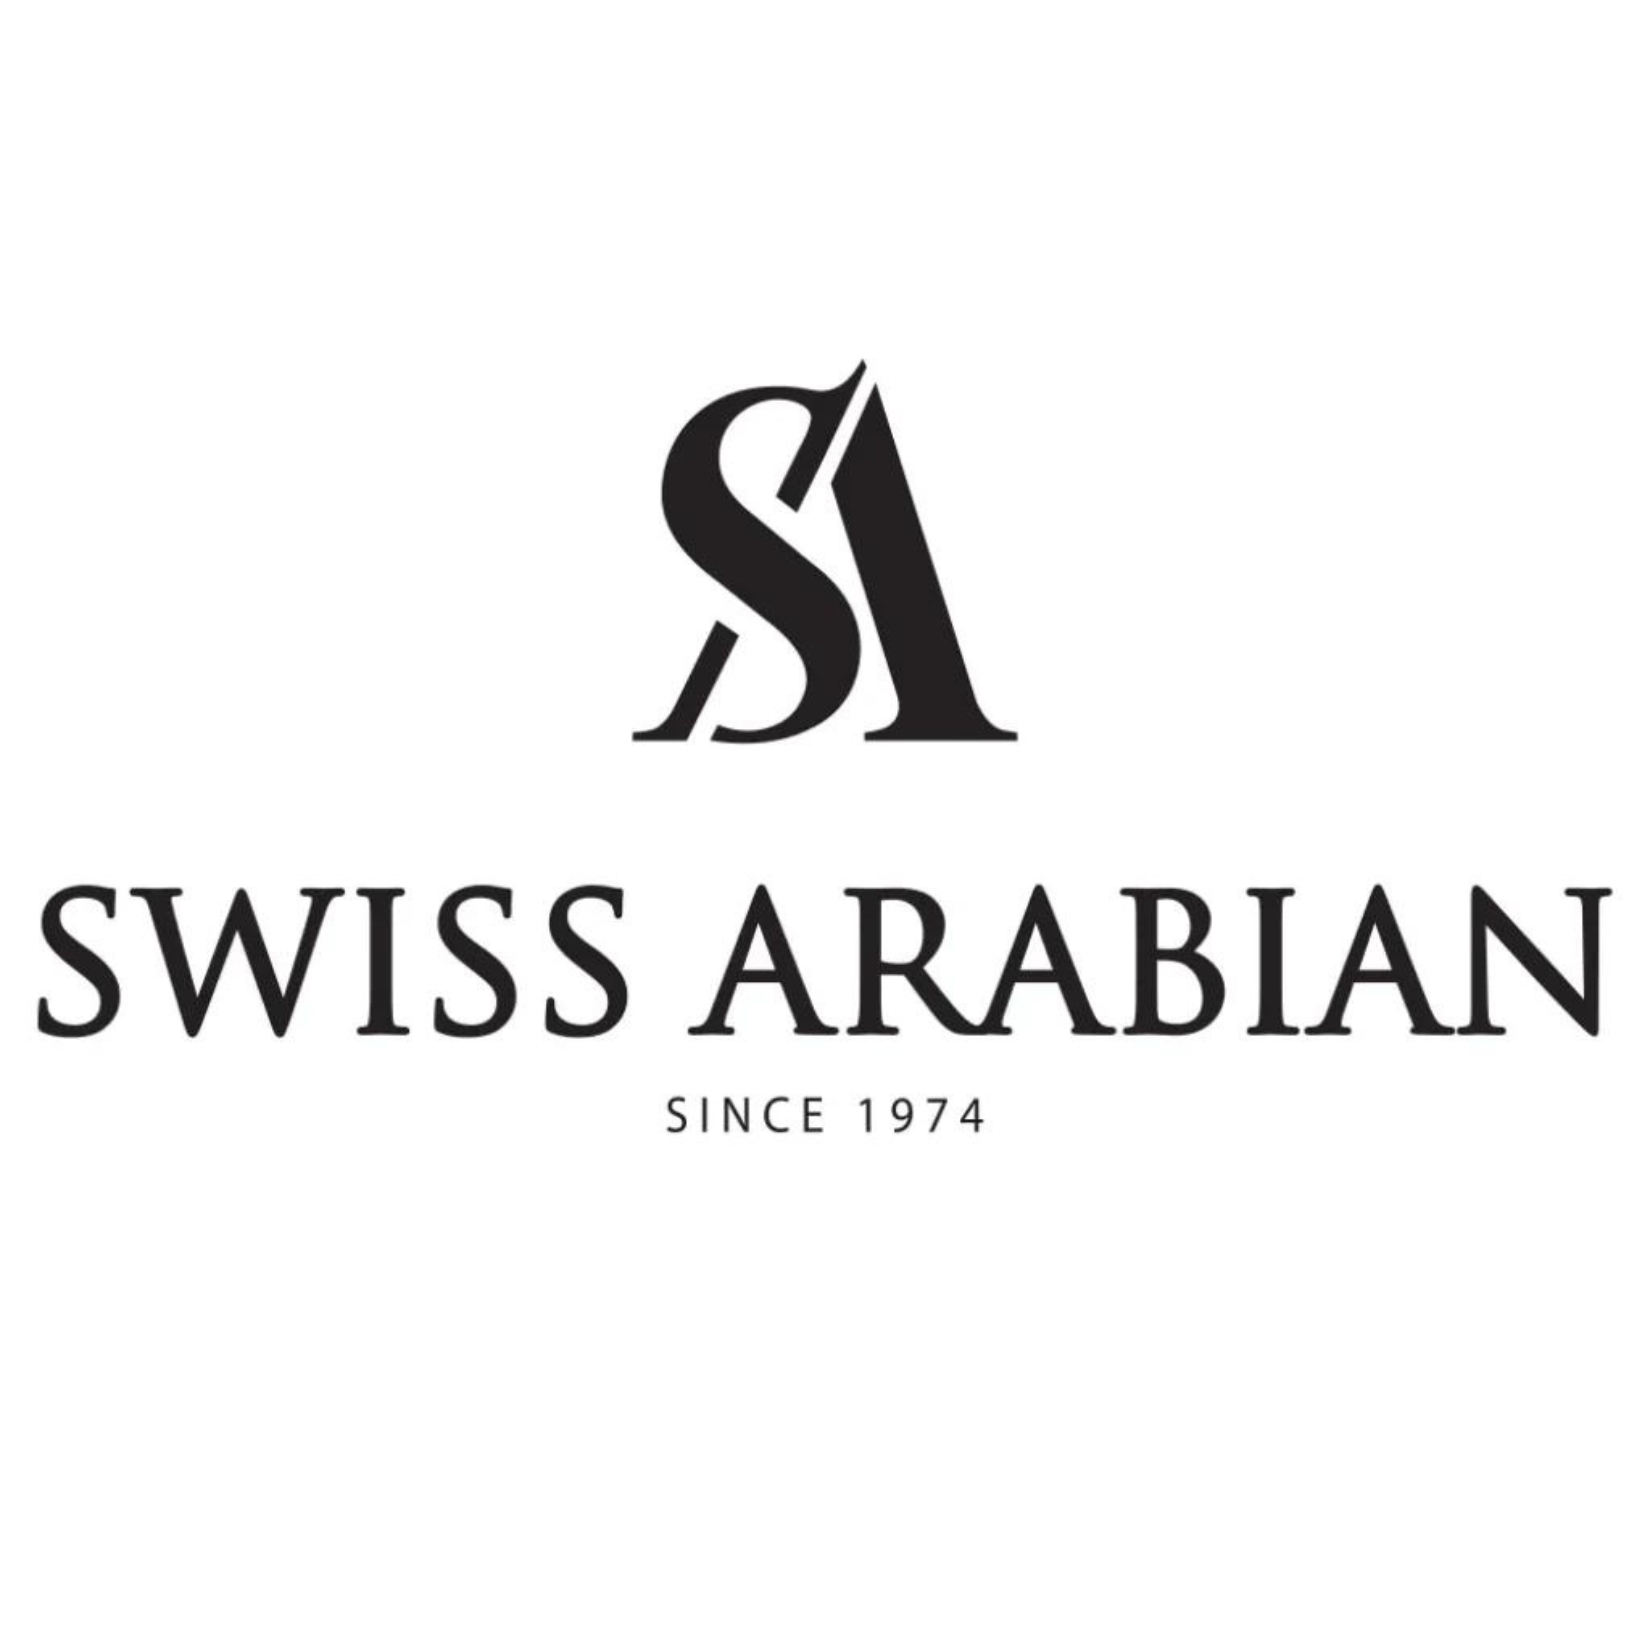 SWISS ARABIAN